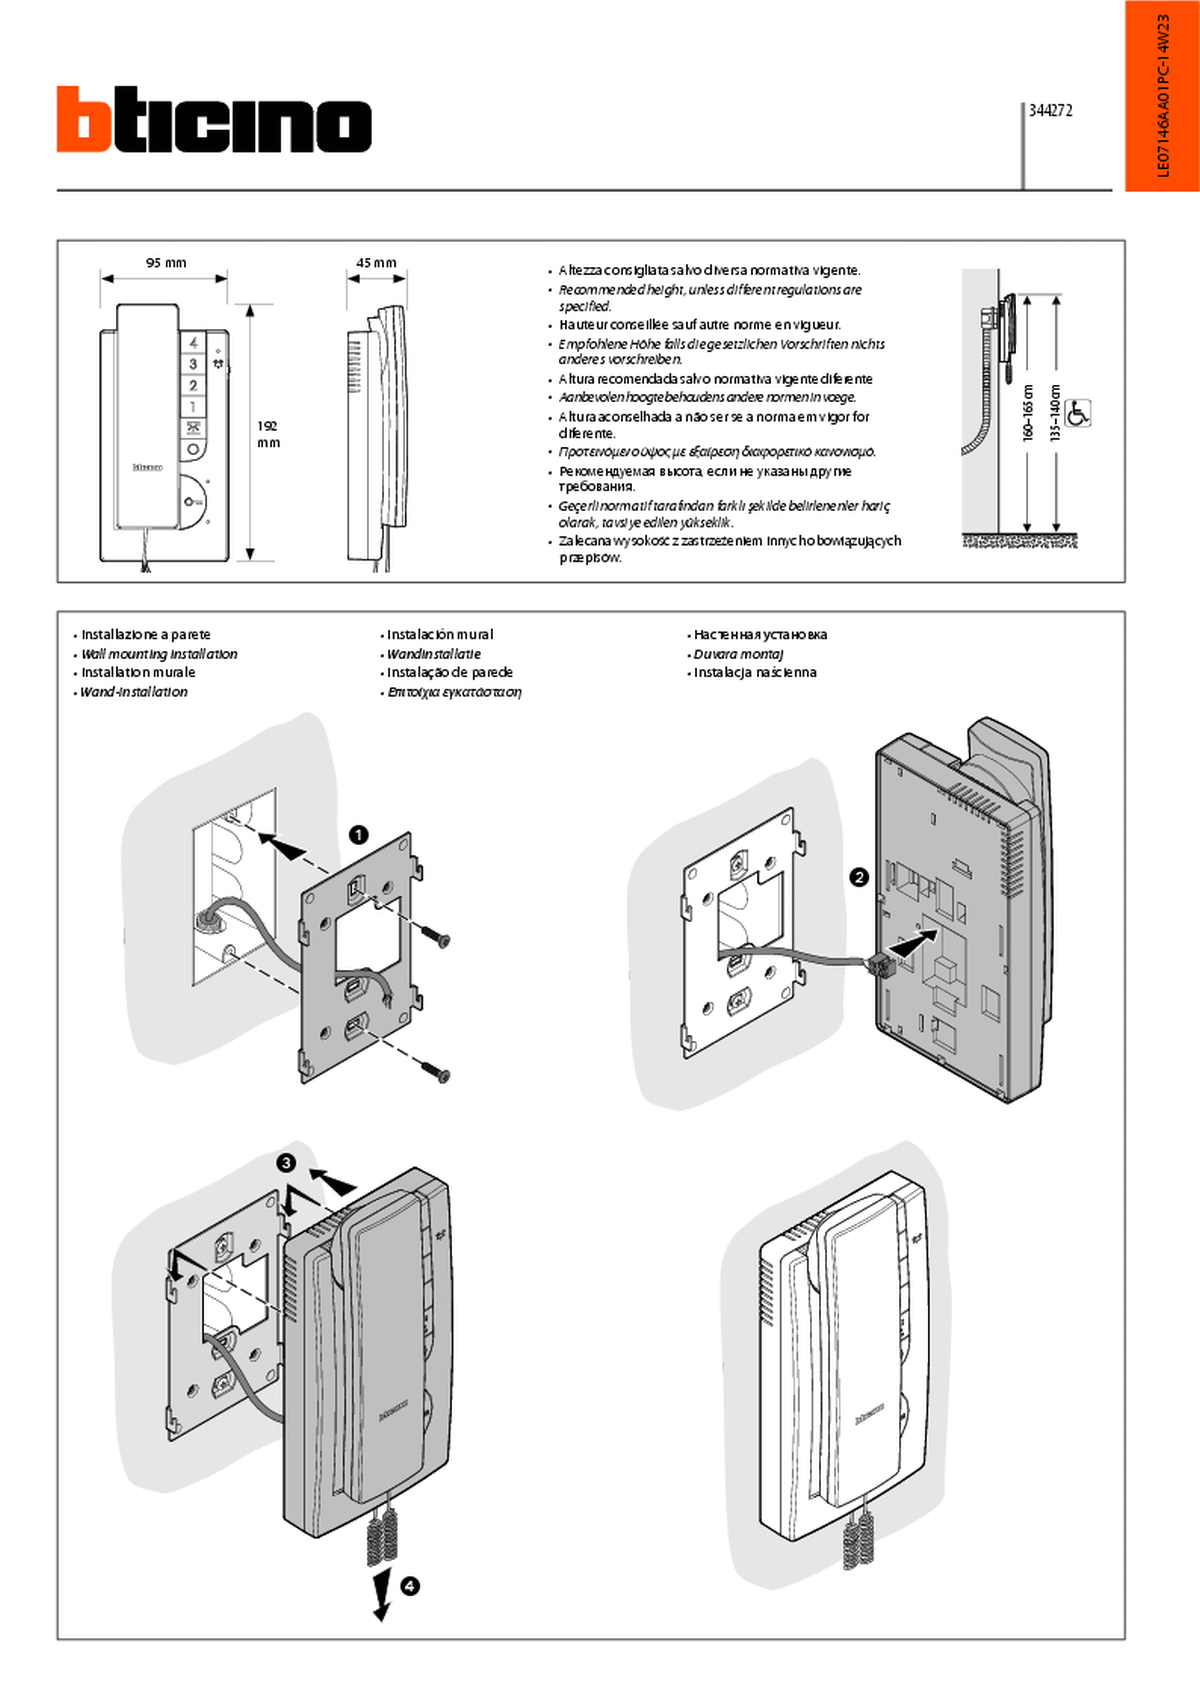 Fabrieksschema T-50 instruction sheet